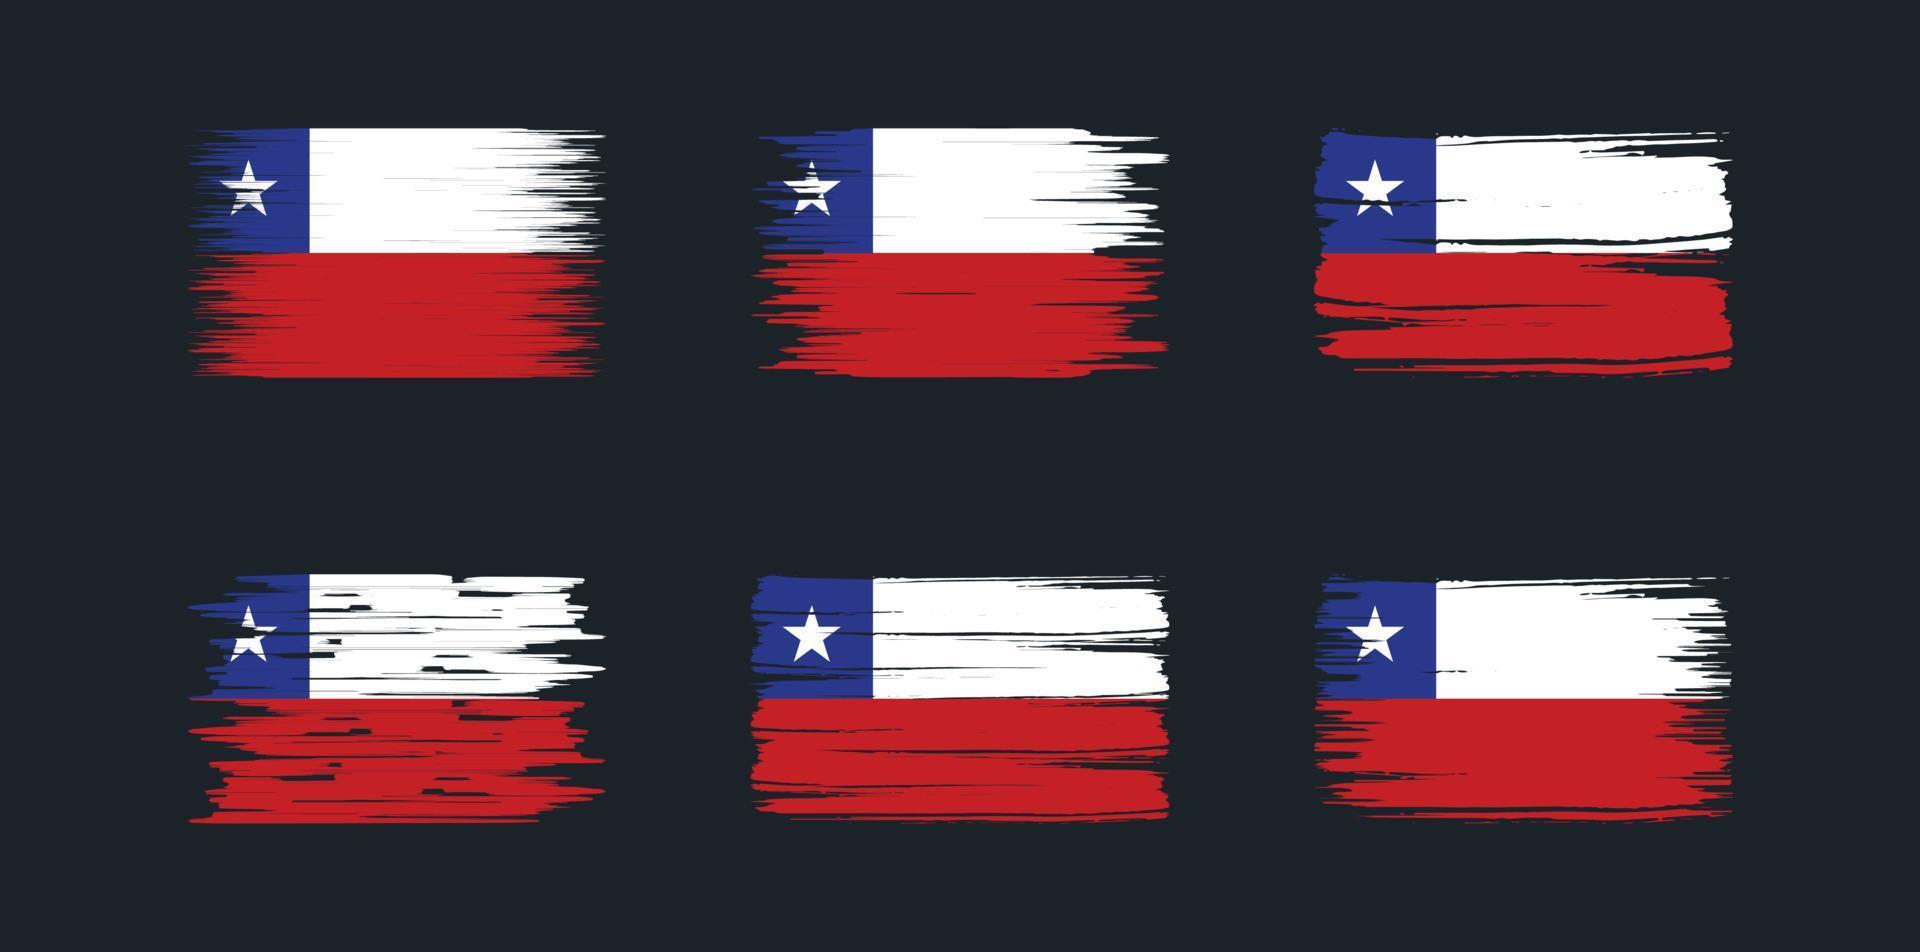 coleção de escova de bandeira do chile. bandeira nacional vetor